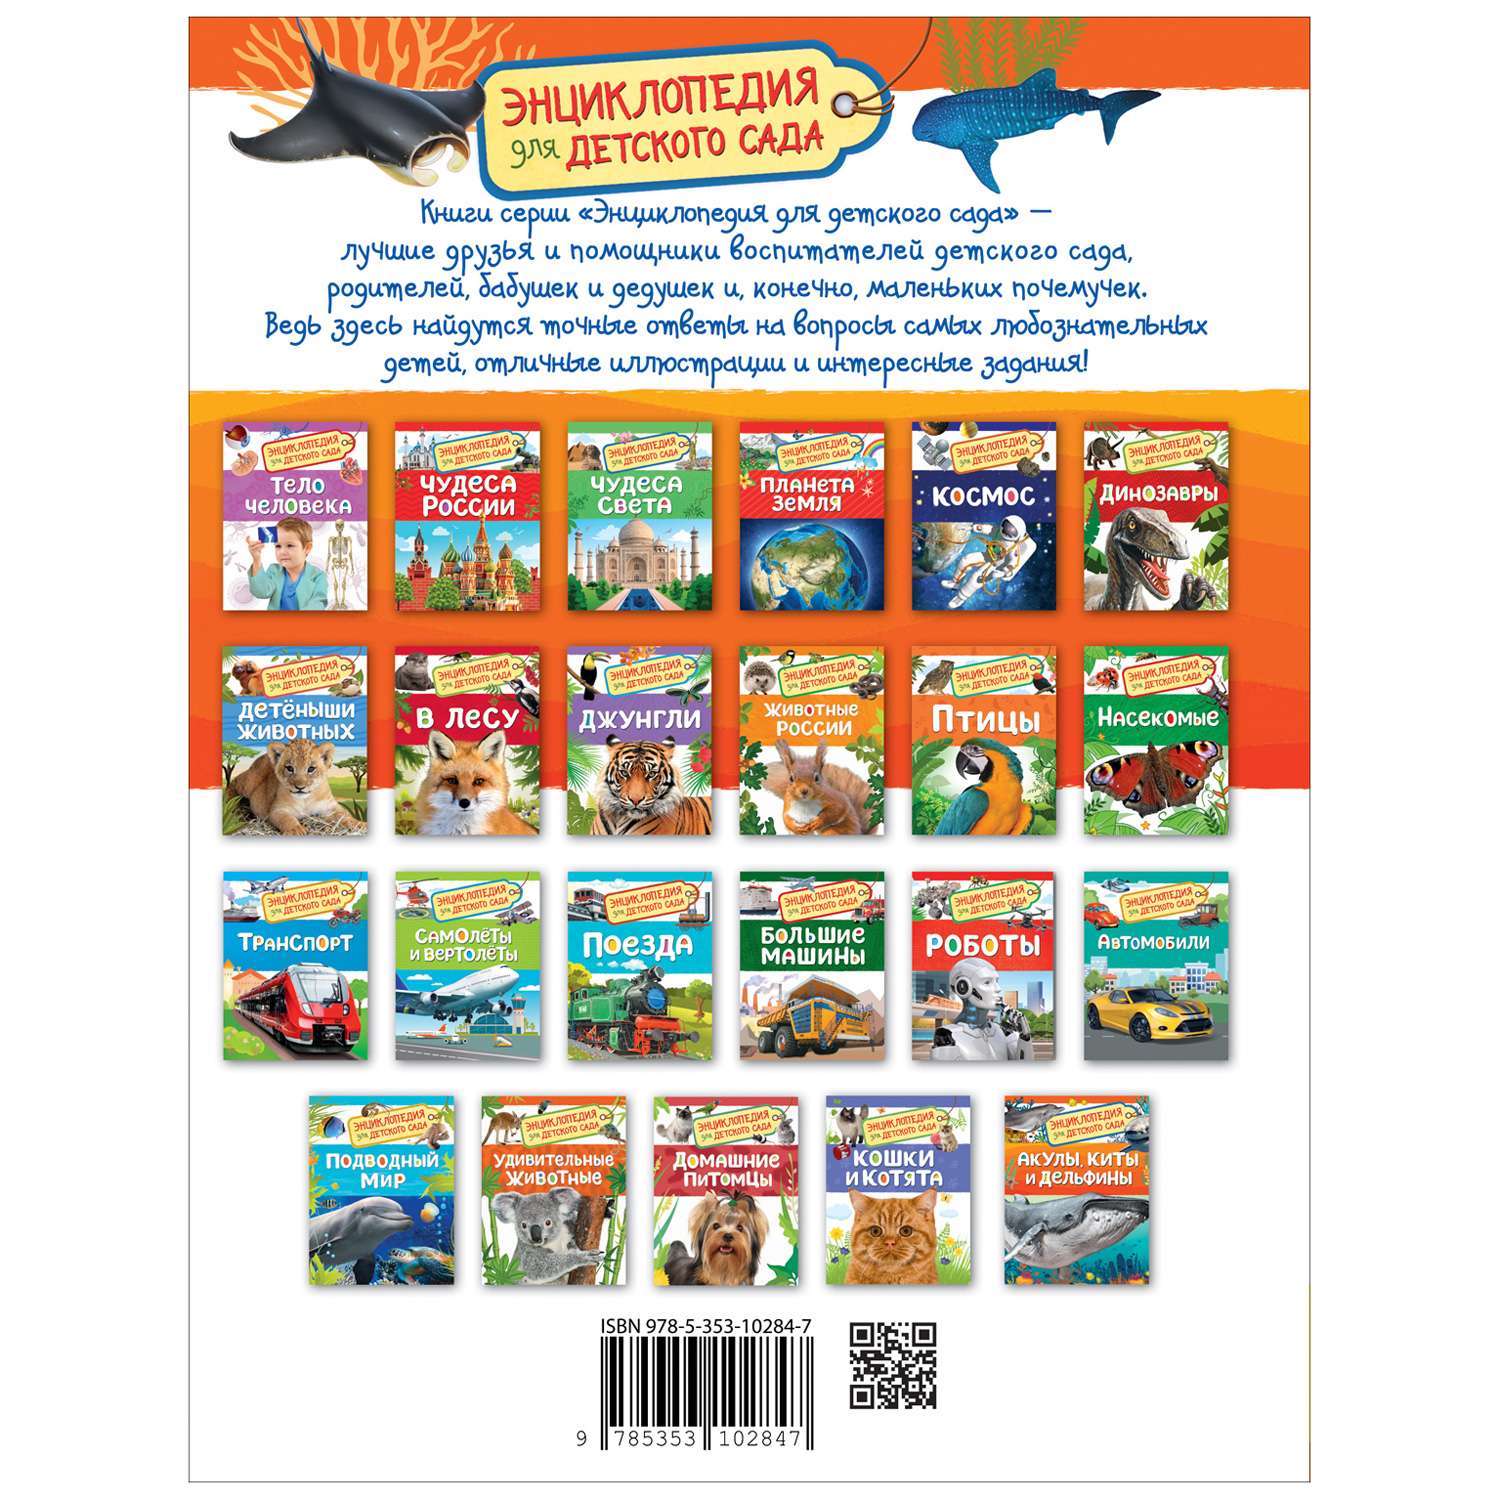 Книга Акулы киты и дельфины Энциклопедия для детского сада - фото 2